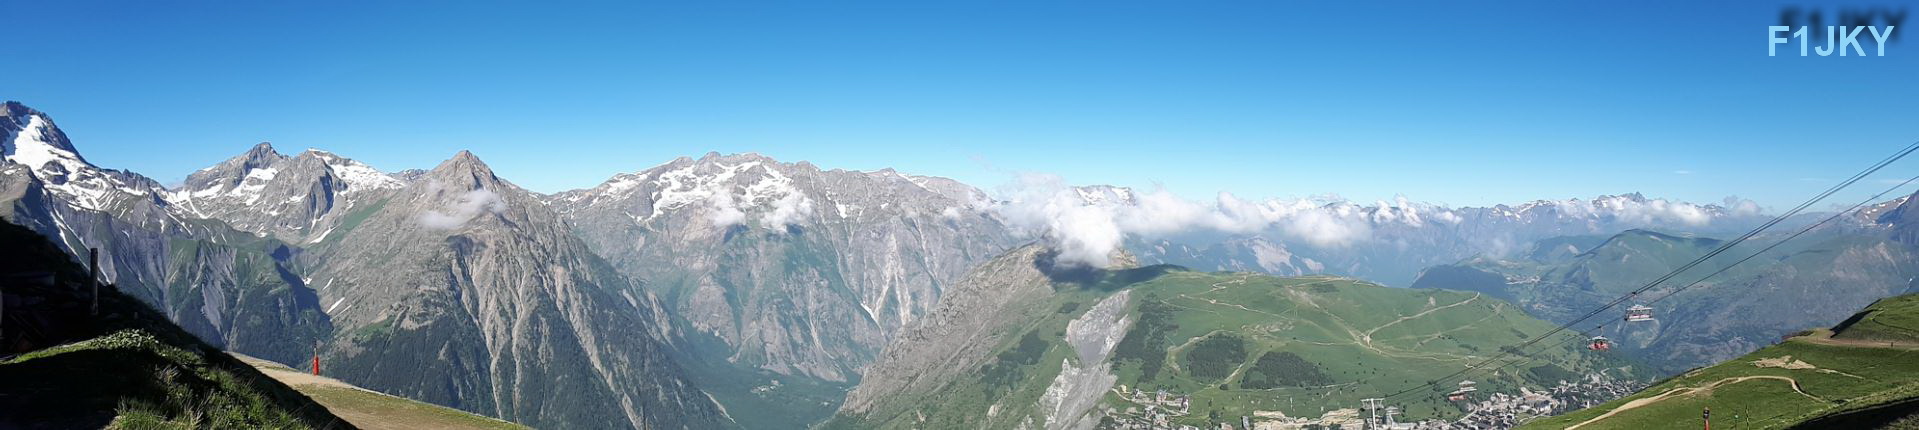 Massif de l'Oisans vue depuis "Le Diable" au 2 Alpes (d.38)